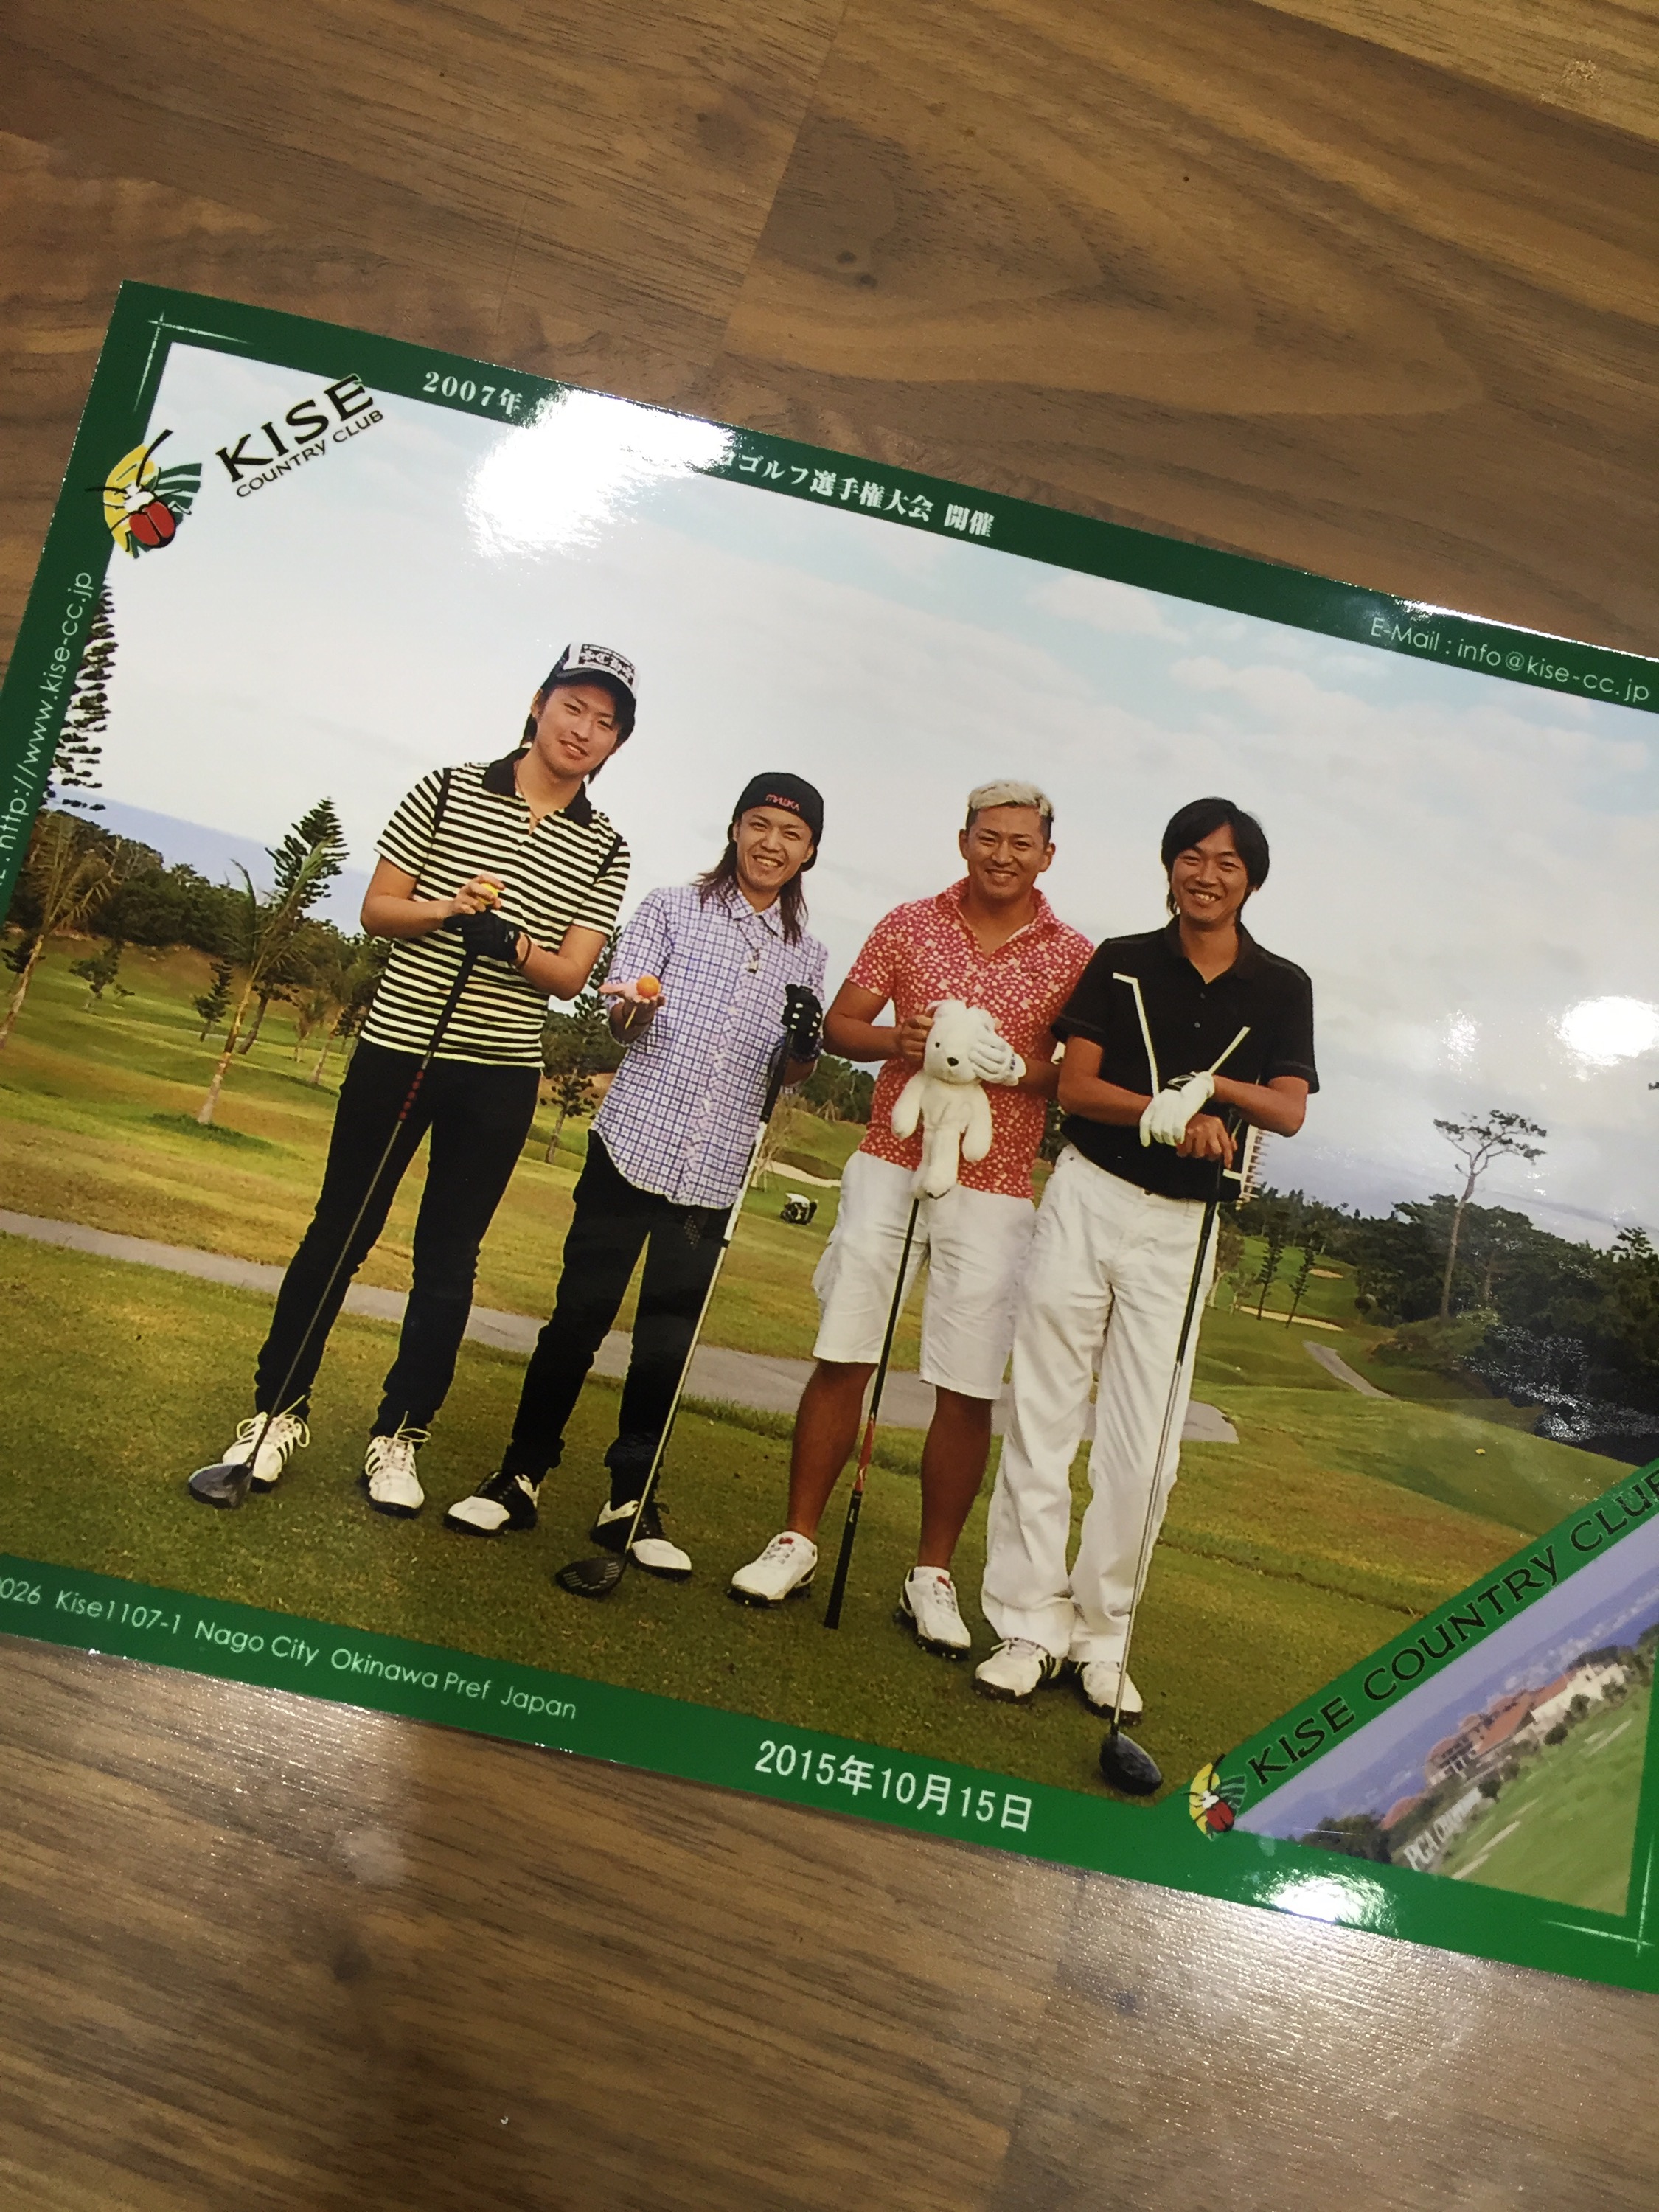 達也ゴルフデビュー 喜瀬カントリークラブ 最高のデビューです！